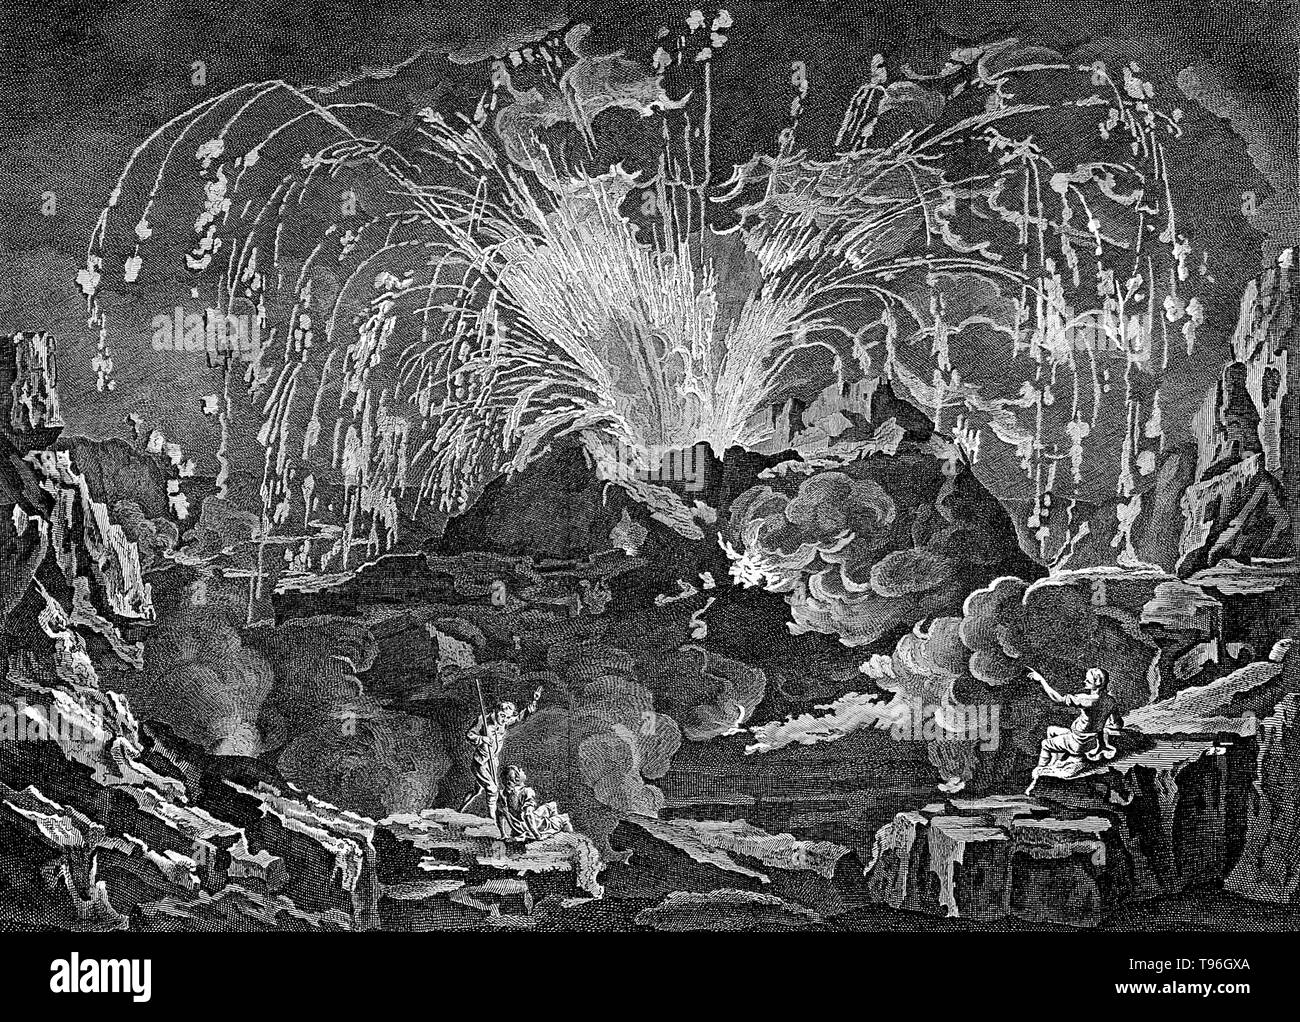 Den Vesuv dramatisch Ausbruch im Jahr 1754, mit drei Zuschauer auf der Suche. Der Vesuv ist ein Stratovulkan in den Golf von Neapel, Italien, am besten für seinen Ausbruch im Jahr 79 N.CHR. bekannt, dass für die Bestattung und die Zerstörung der römischen Städte Pompeji und Herculaneum geführt. Seitdem Vesuv hat rund drei Dutzend mal ausgebrochen. Der Vulkan wurde Ruhestrom am Ende des 13. Jahrhunderts und in den folgenden Jahren es wieder mit Gärten und Weinbergen als der alte abgedeckt wurde. Stockfoto